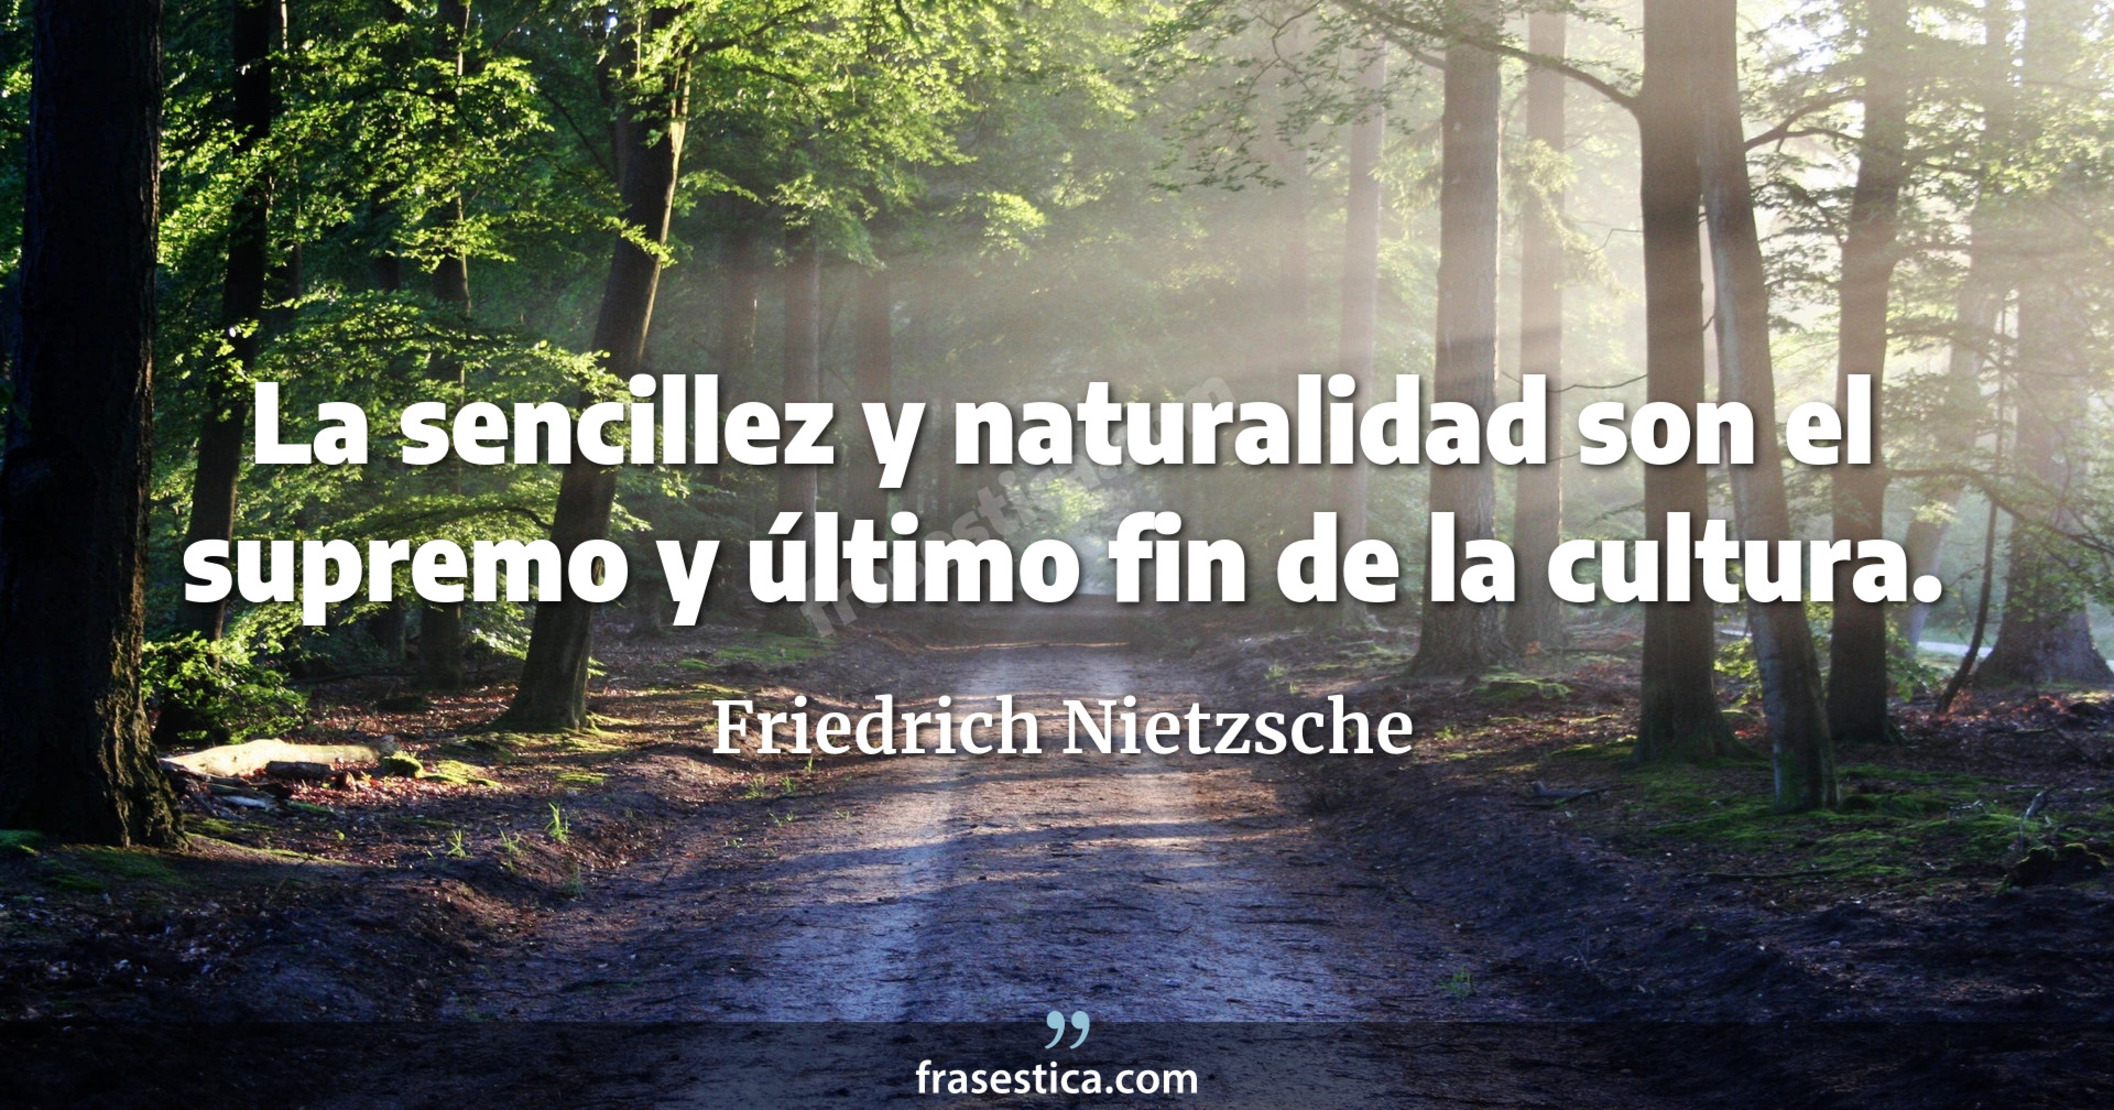 La sencillez y naturalidad son el supremo y último fin de la cultura. - Friedrich Nietzsche